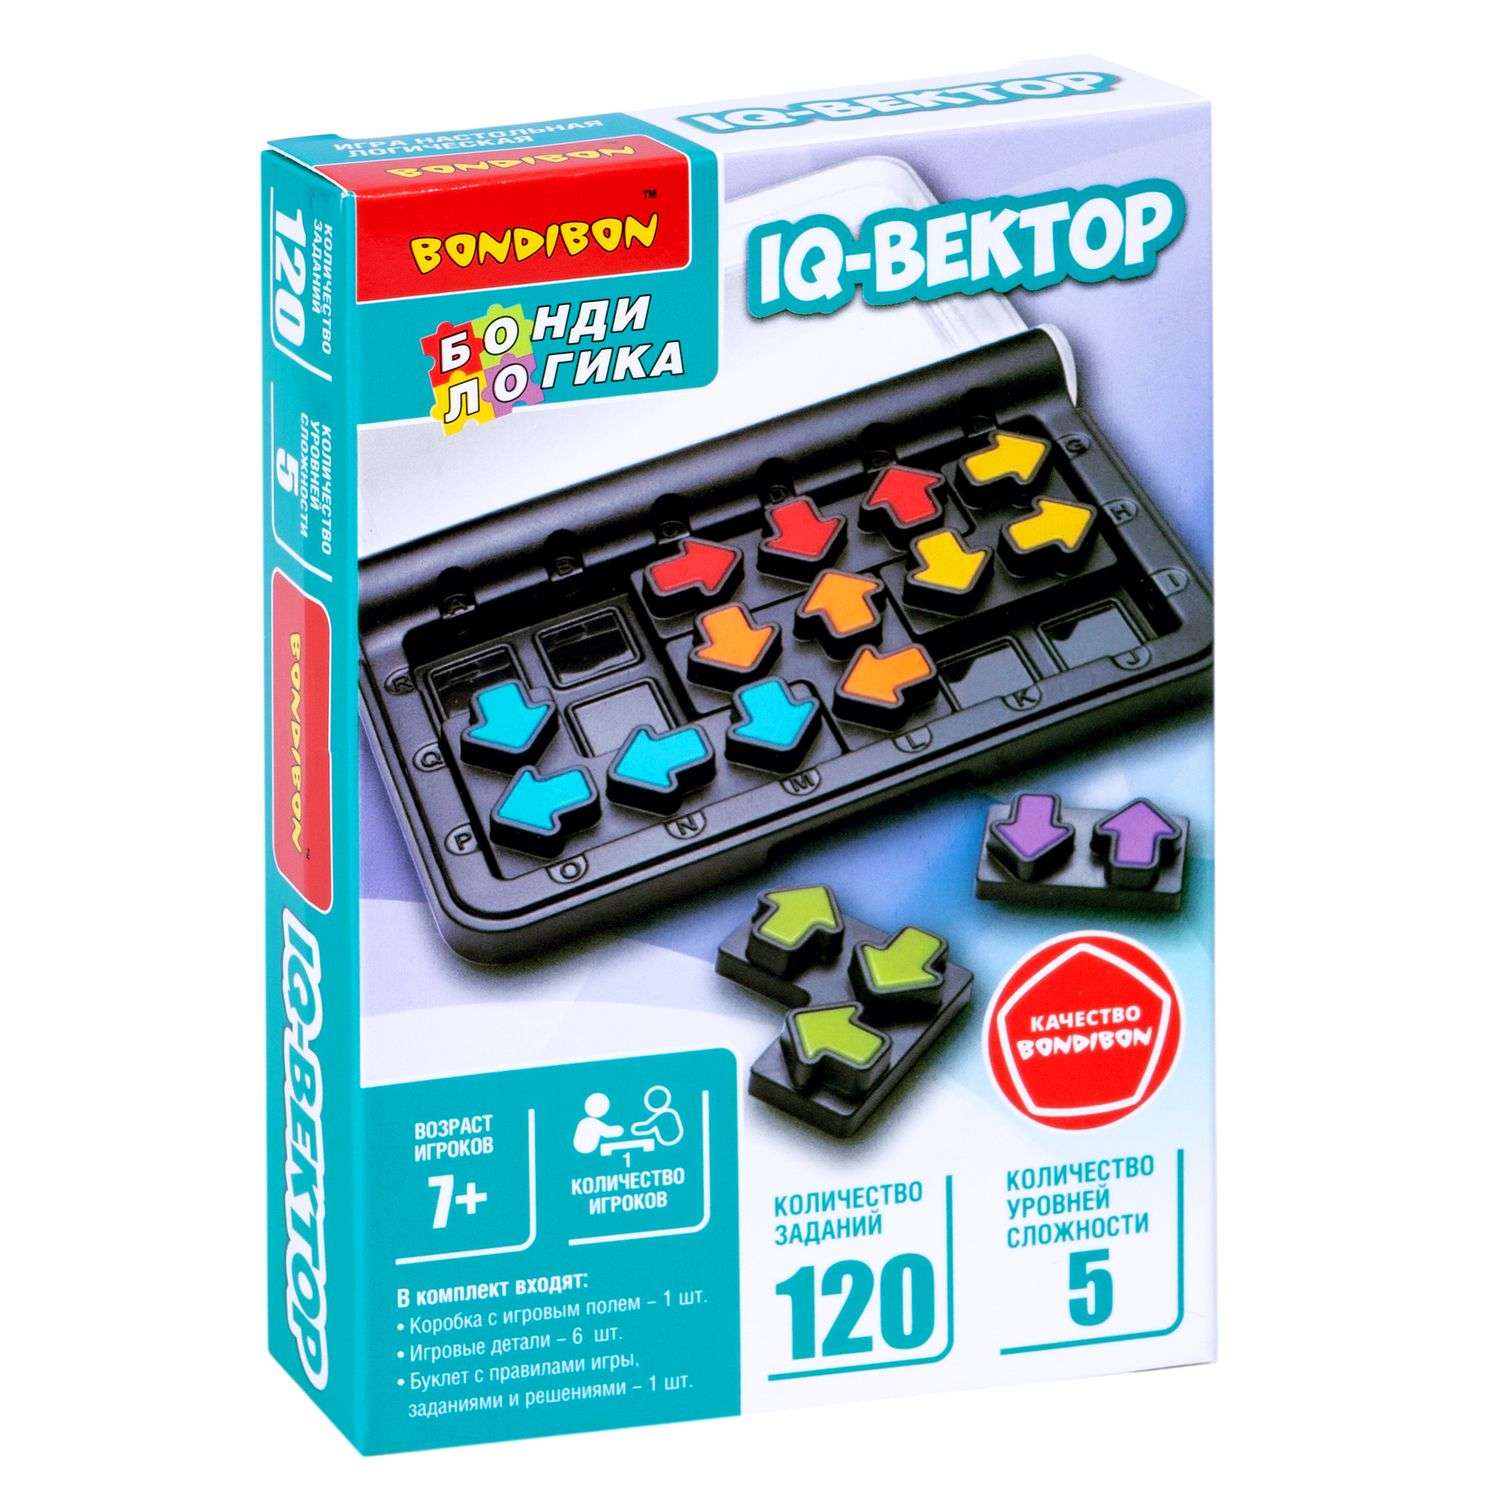 Настольная логическая игра BONDIBON карманная головоломка IQ-Вектор серия БондиЛогика - фото 3